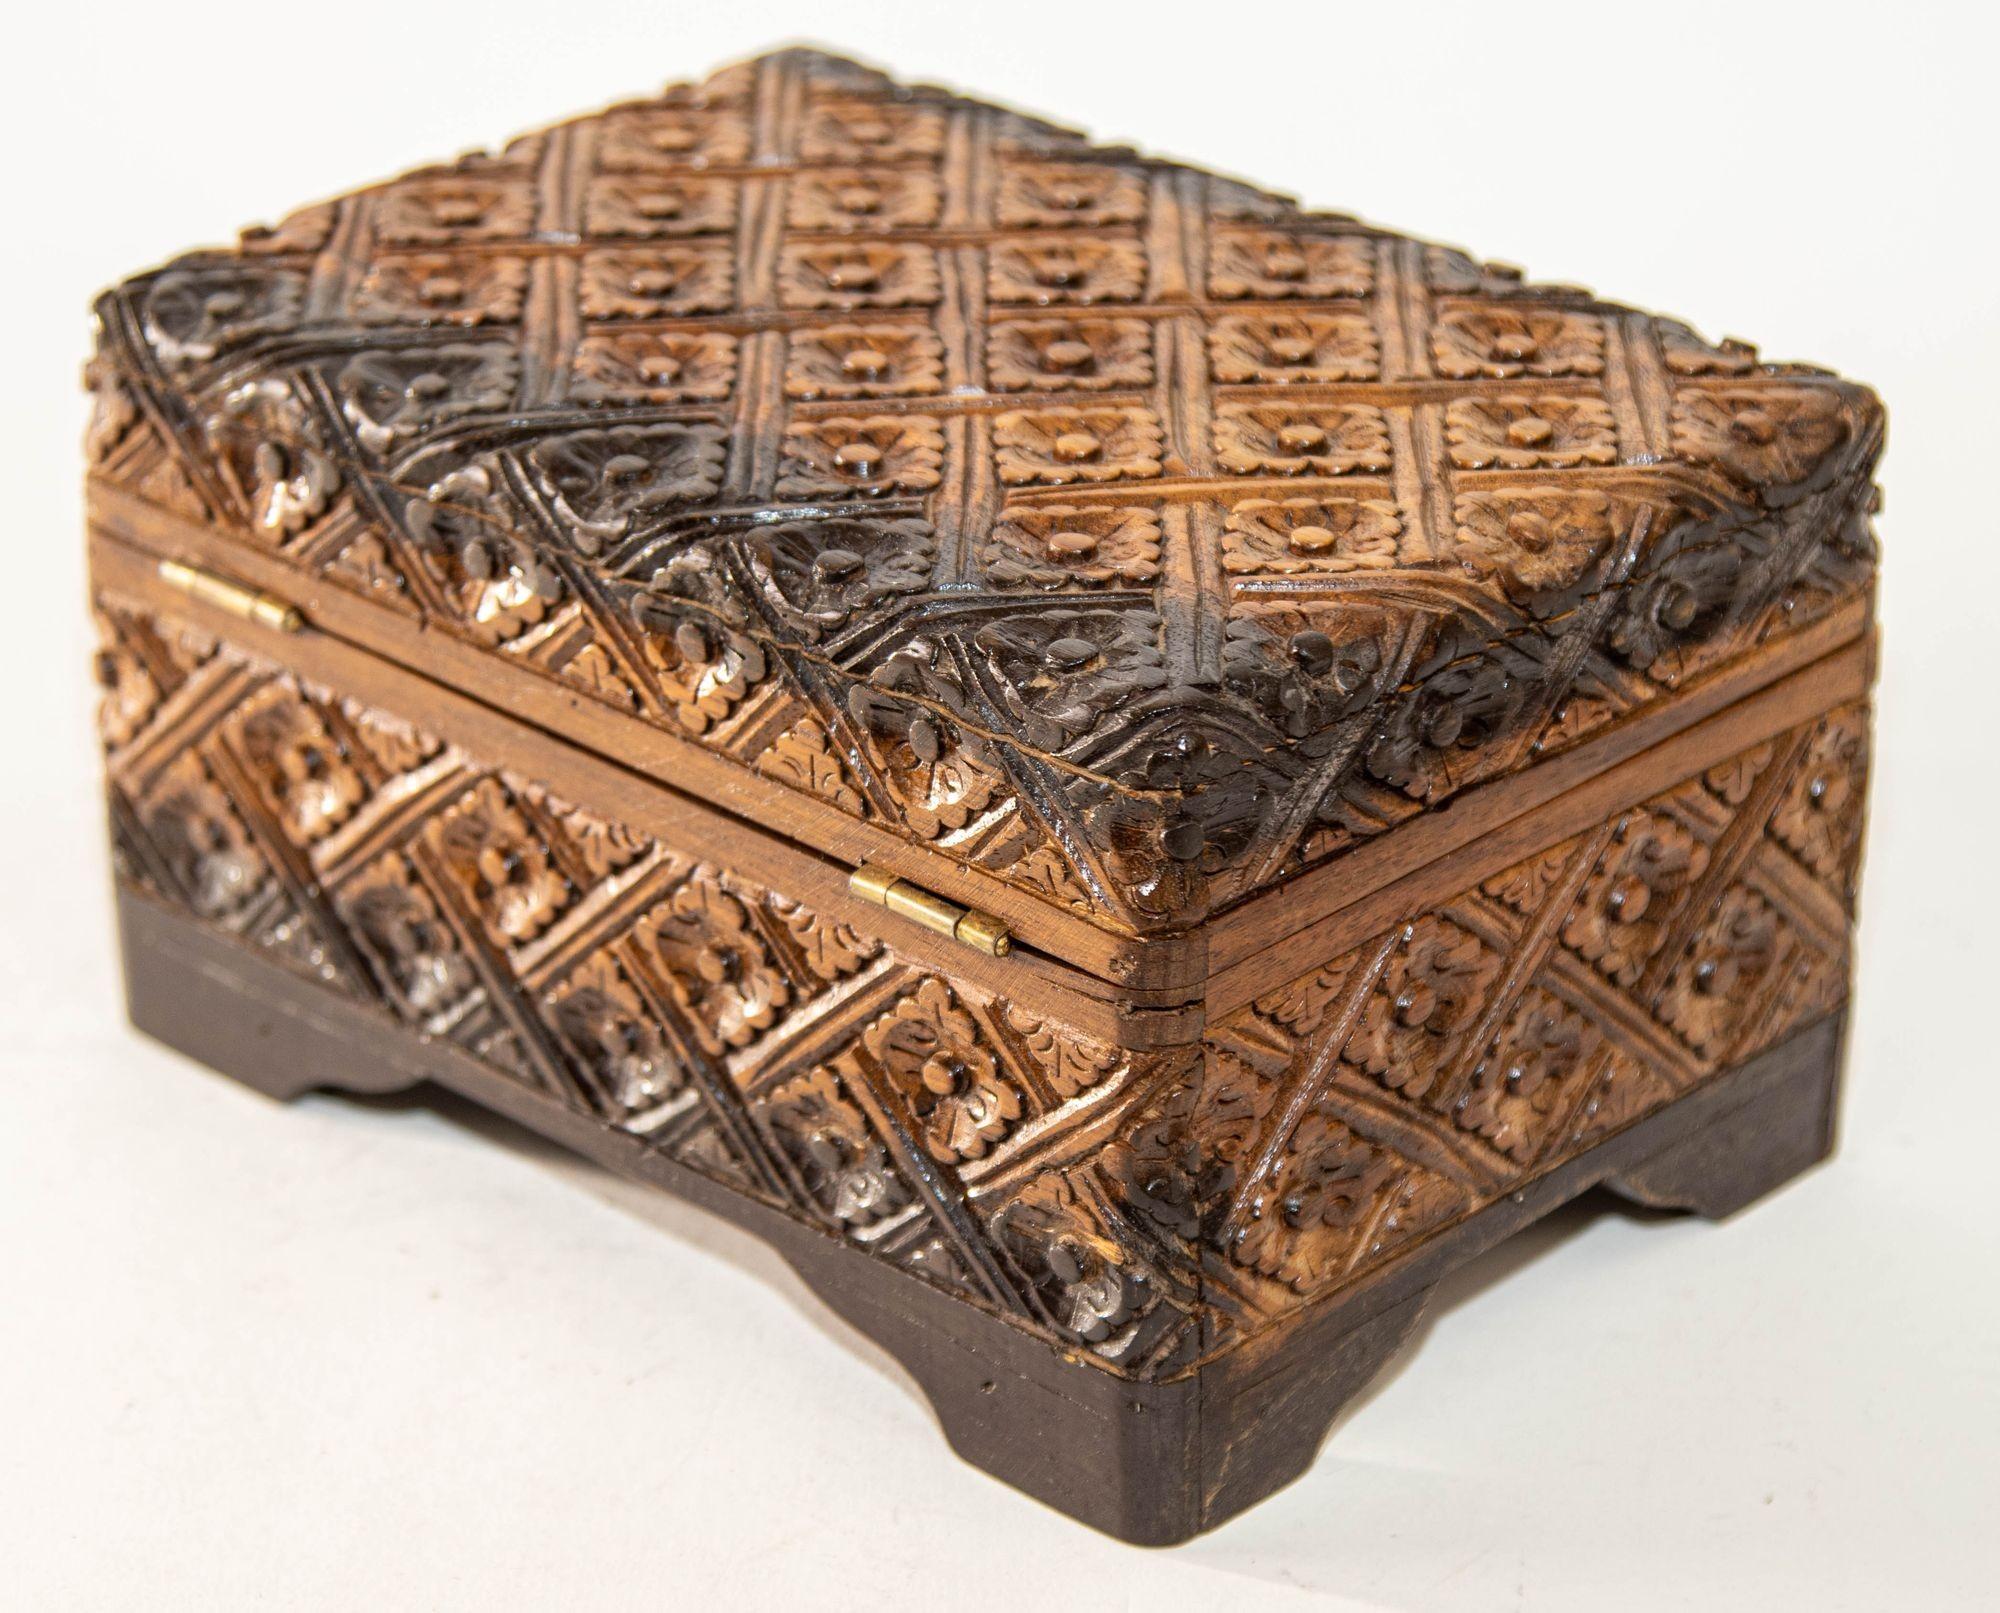 1950s Vintage Asian Large Hand Carved Wooden Humidor Box.
Handgeschnitzte Holzkiste im Kaschmir-Stil aus der Mitte des 20. Jahrhunderts, reich verziert mit stilisierten floralen Schnitzereien, zweifarbig hell- und dunkelbraun, mit Scharnierdeckel